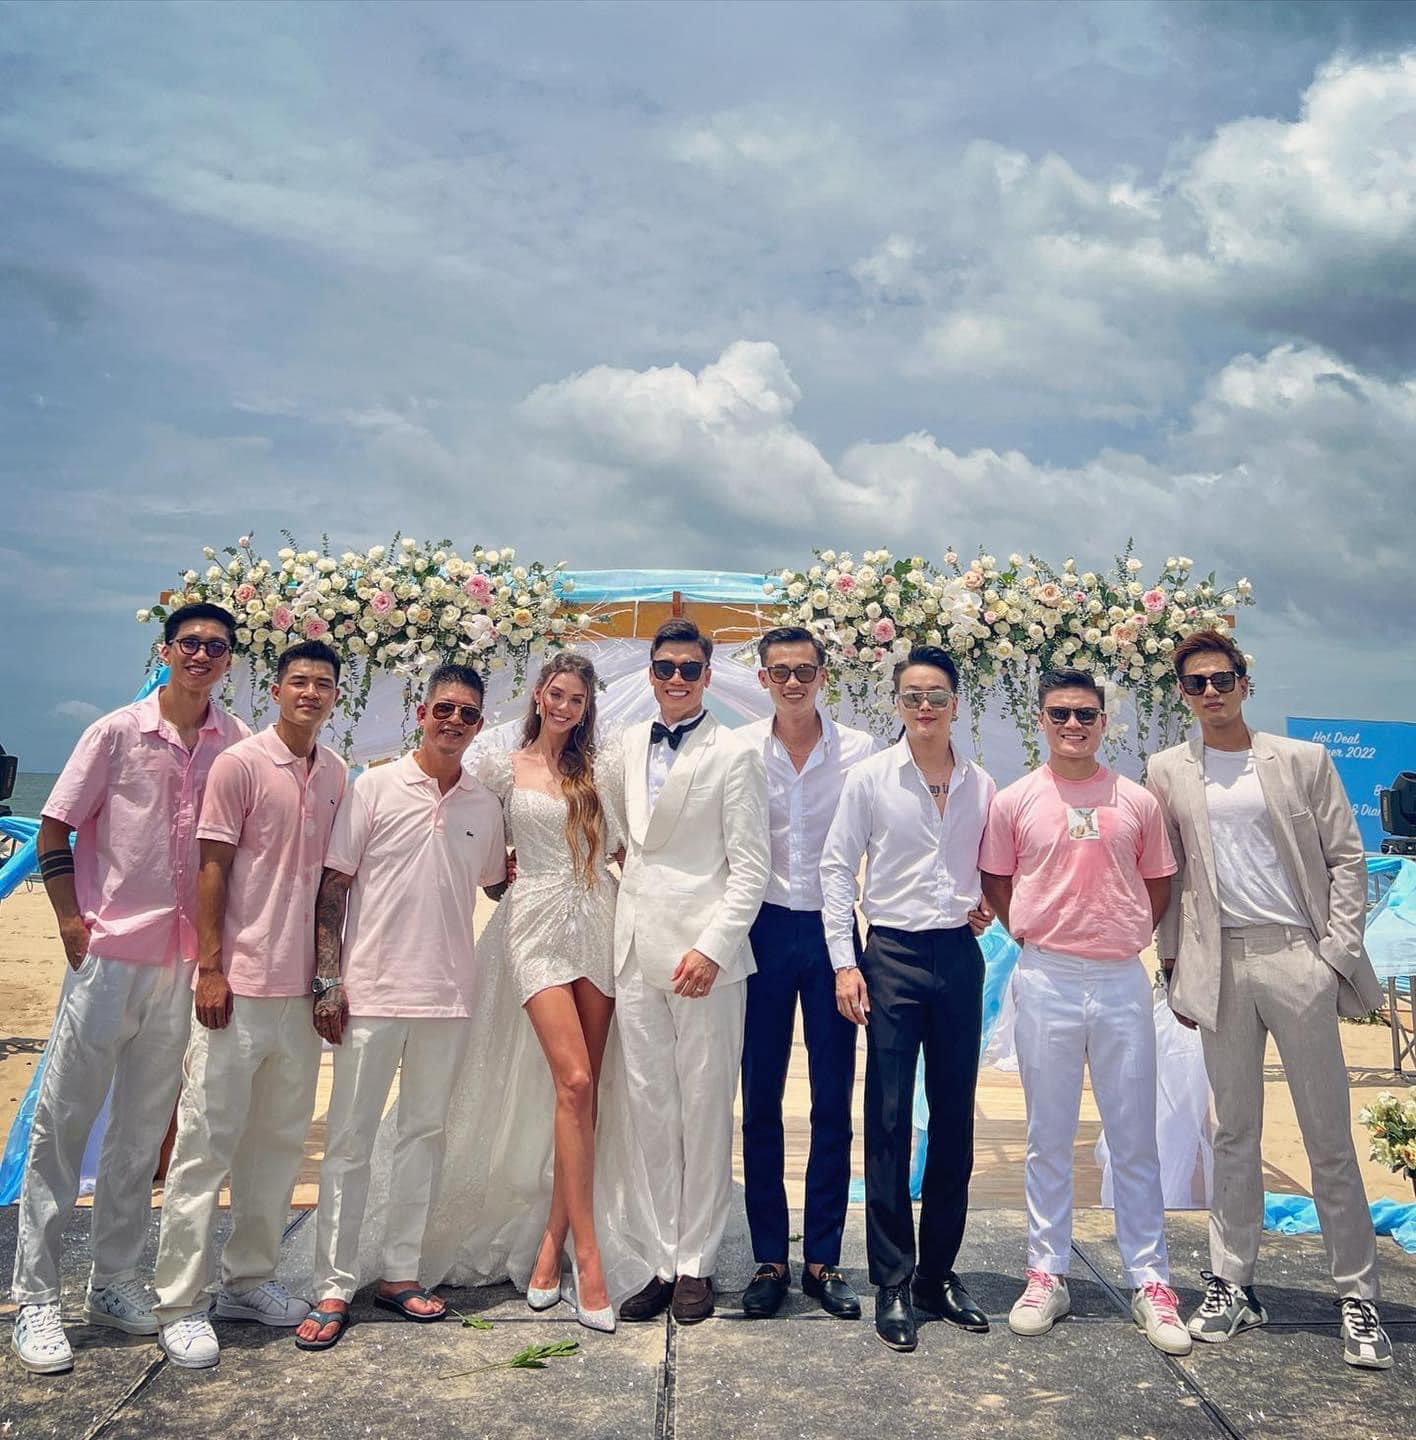 HOT: Thủ môn Bùi Tiến Dũng tổ chức đám cưới với bạn gái Tây, dàn tuyển thủ Việt Nam đều góp mặt chung vui - Ảnh 1